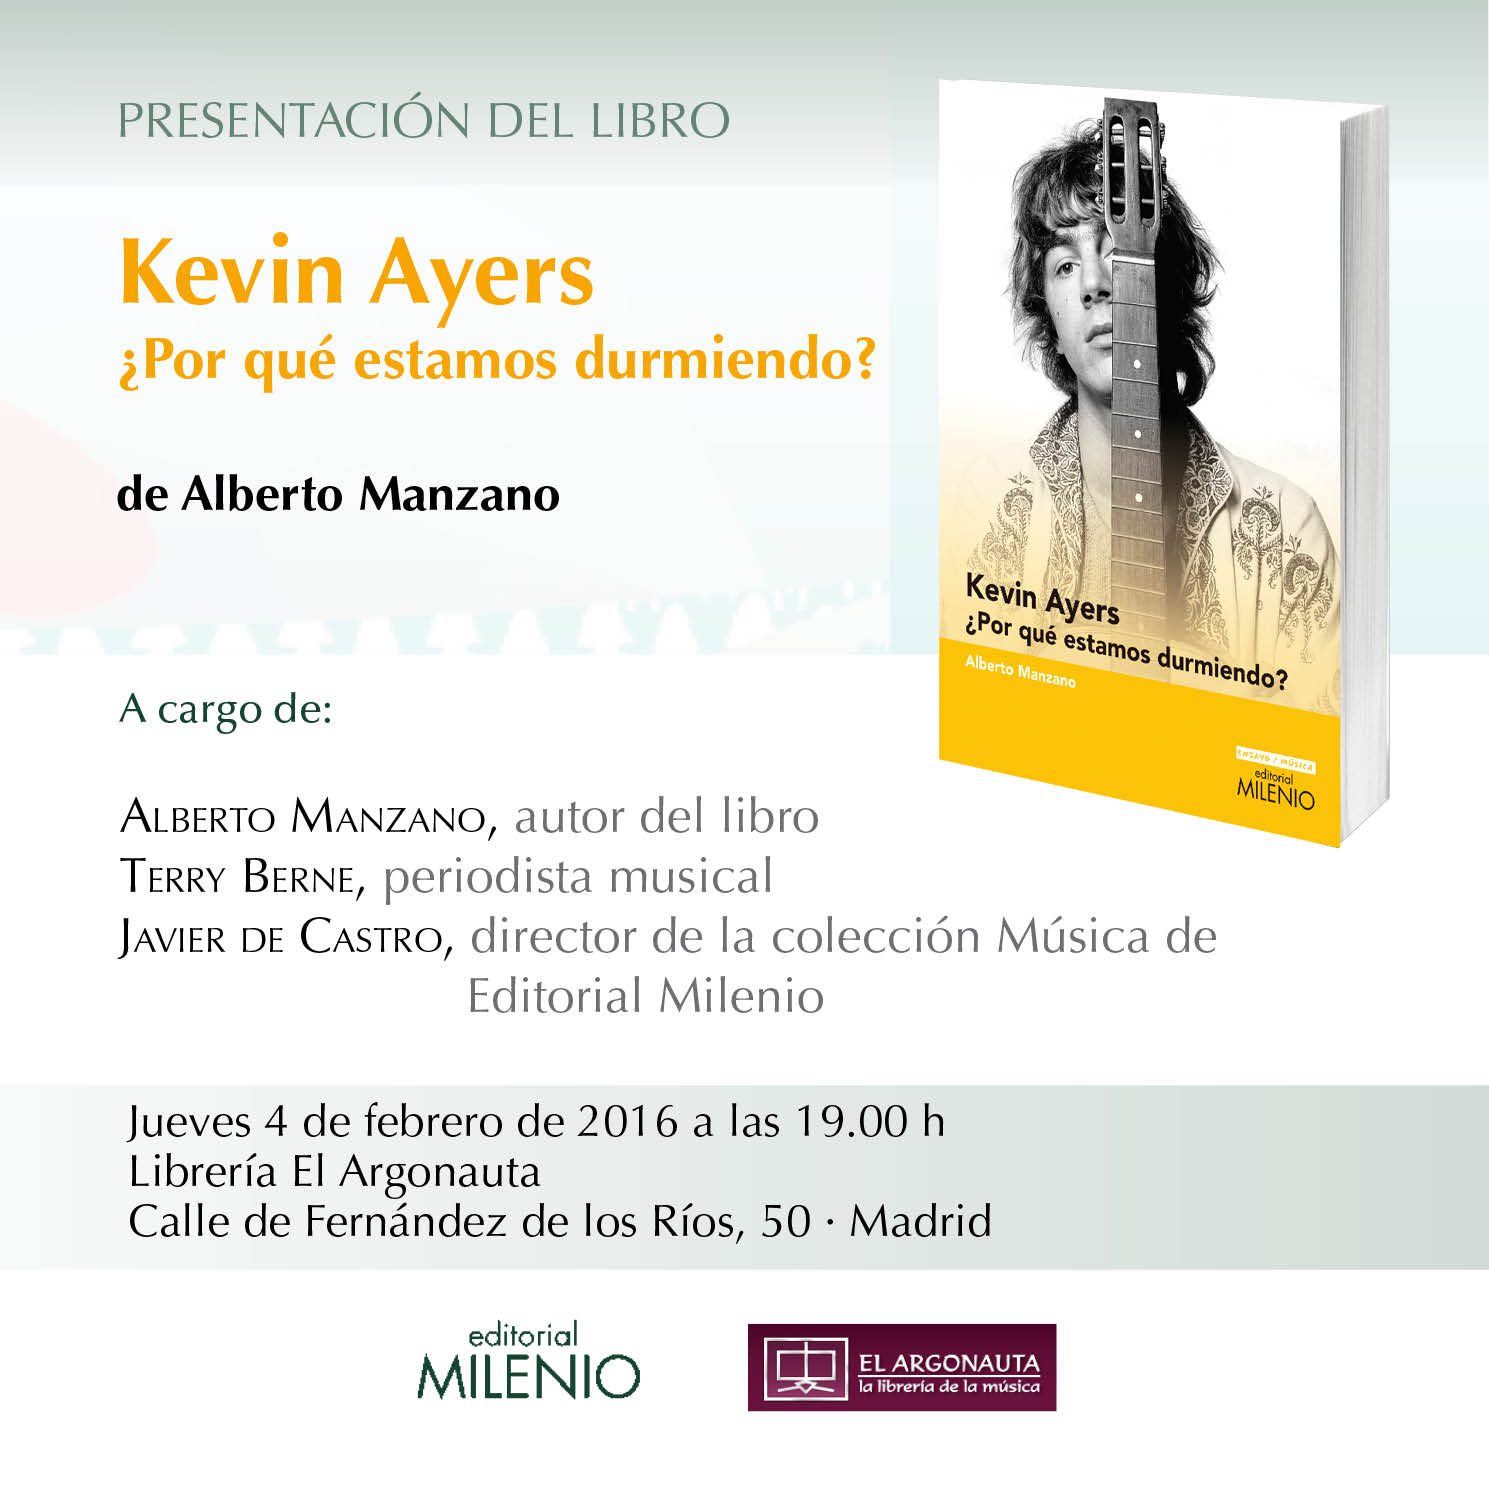 Presentación del libro "Kevin Ayers ¿Por qué estamos durmiendo?", de Alberto Manzano